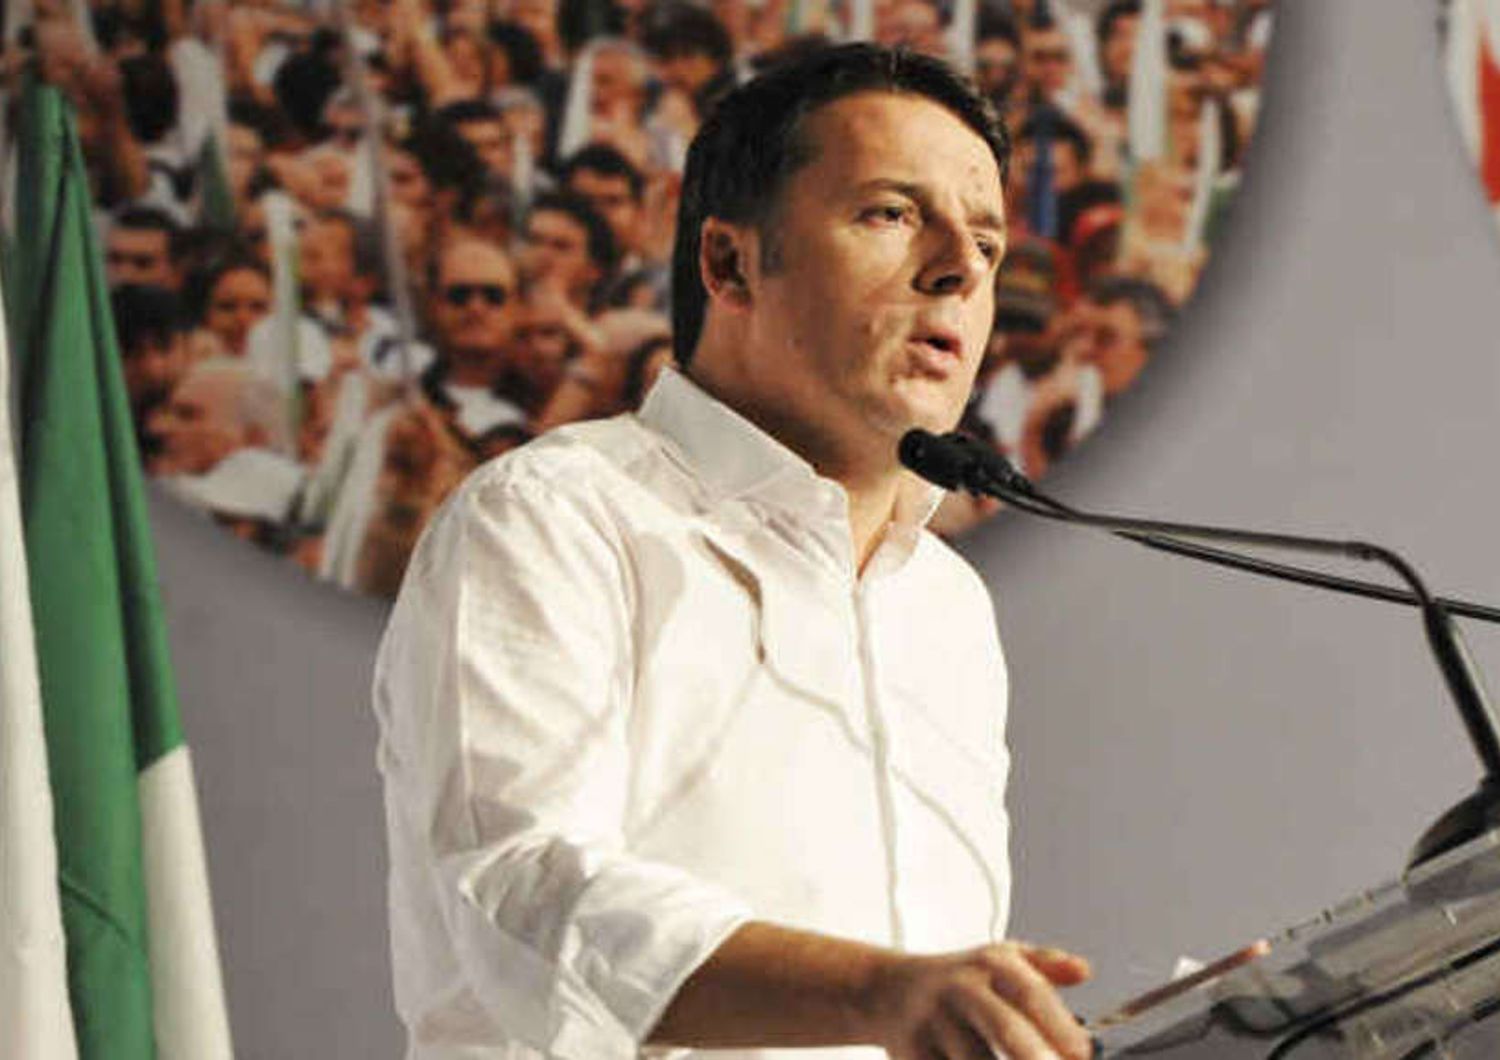 L. Elettorale: Renzi, la faremo nei tempi stabiliti